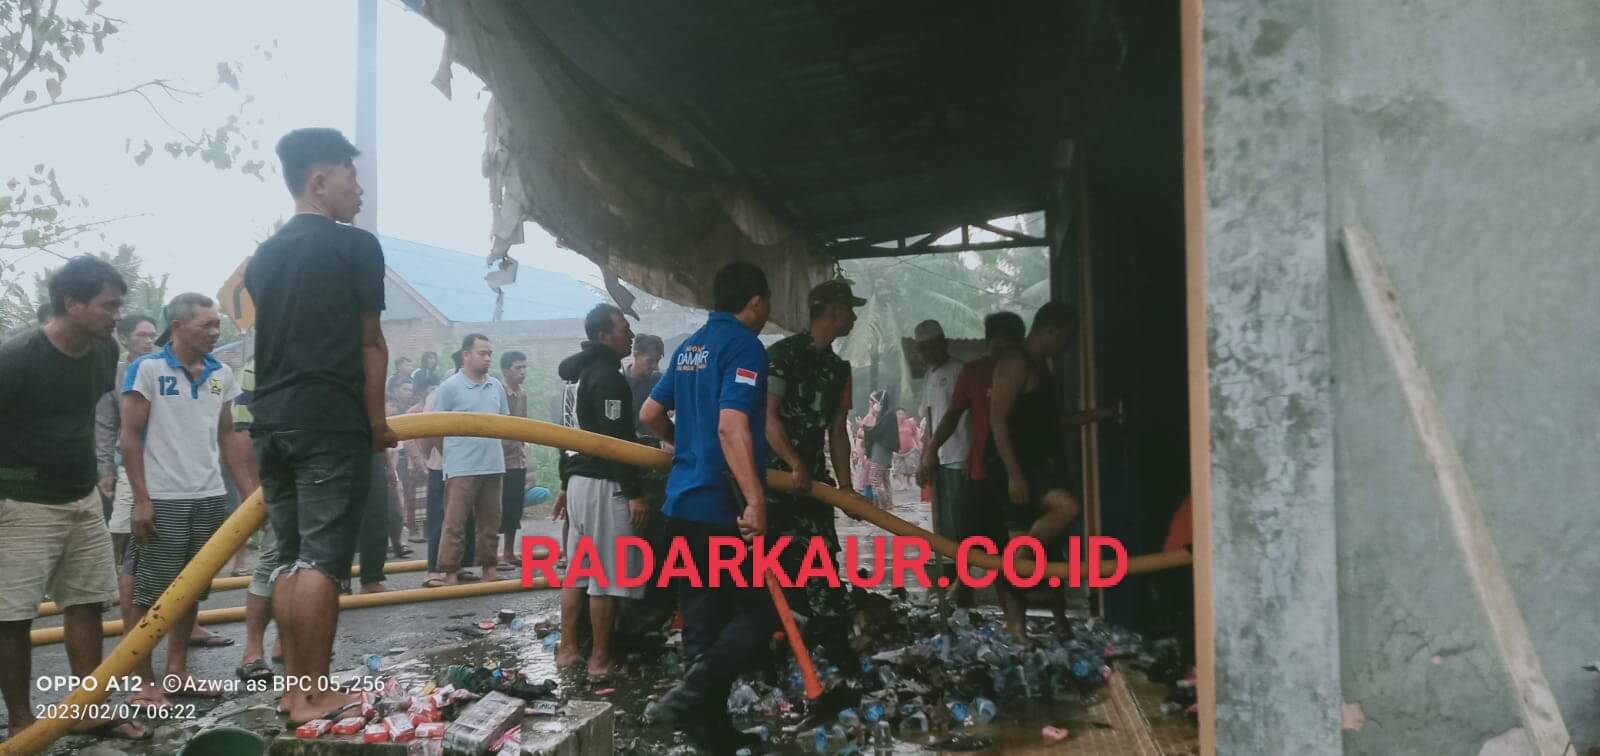 BREAKING NEWS: Ruko di Kaur Bengkulu Hangus Dilalap Api, Kejadian jelang Subuh